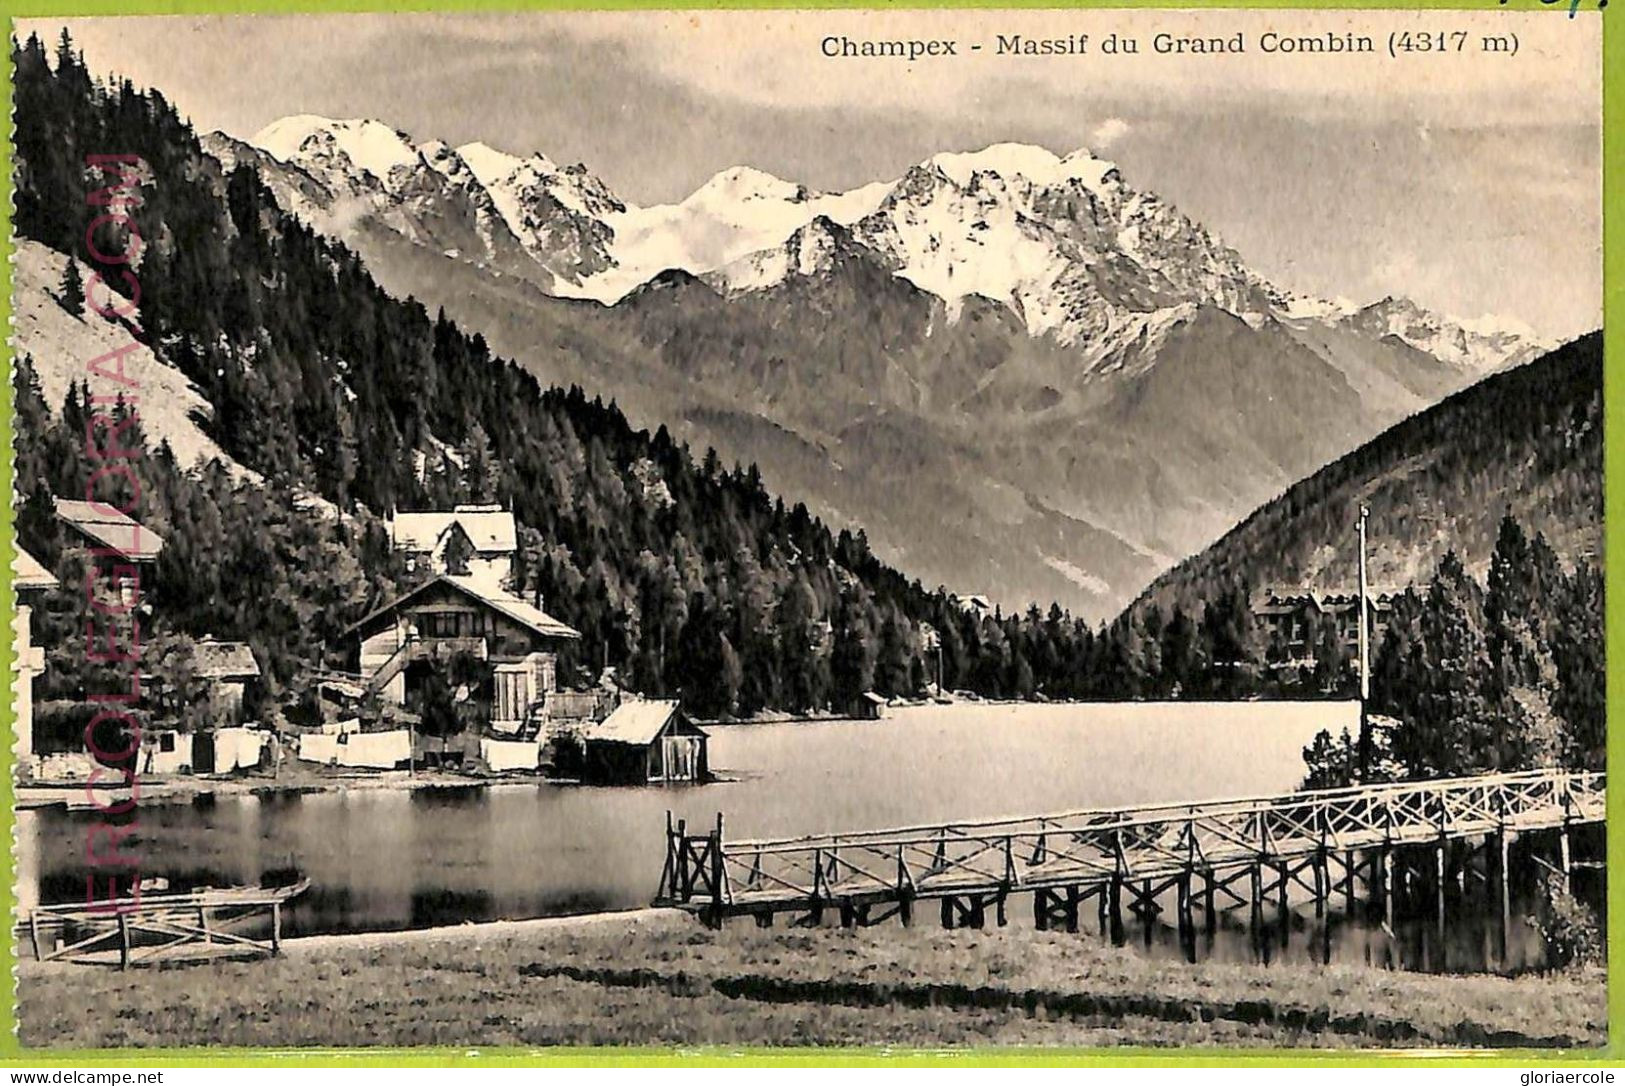 Ad4093 - SWITZERLAND Schweitz - Ansichtskarten VINTAGE POSTCARD - Champex - Cham